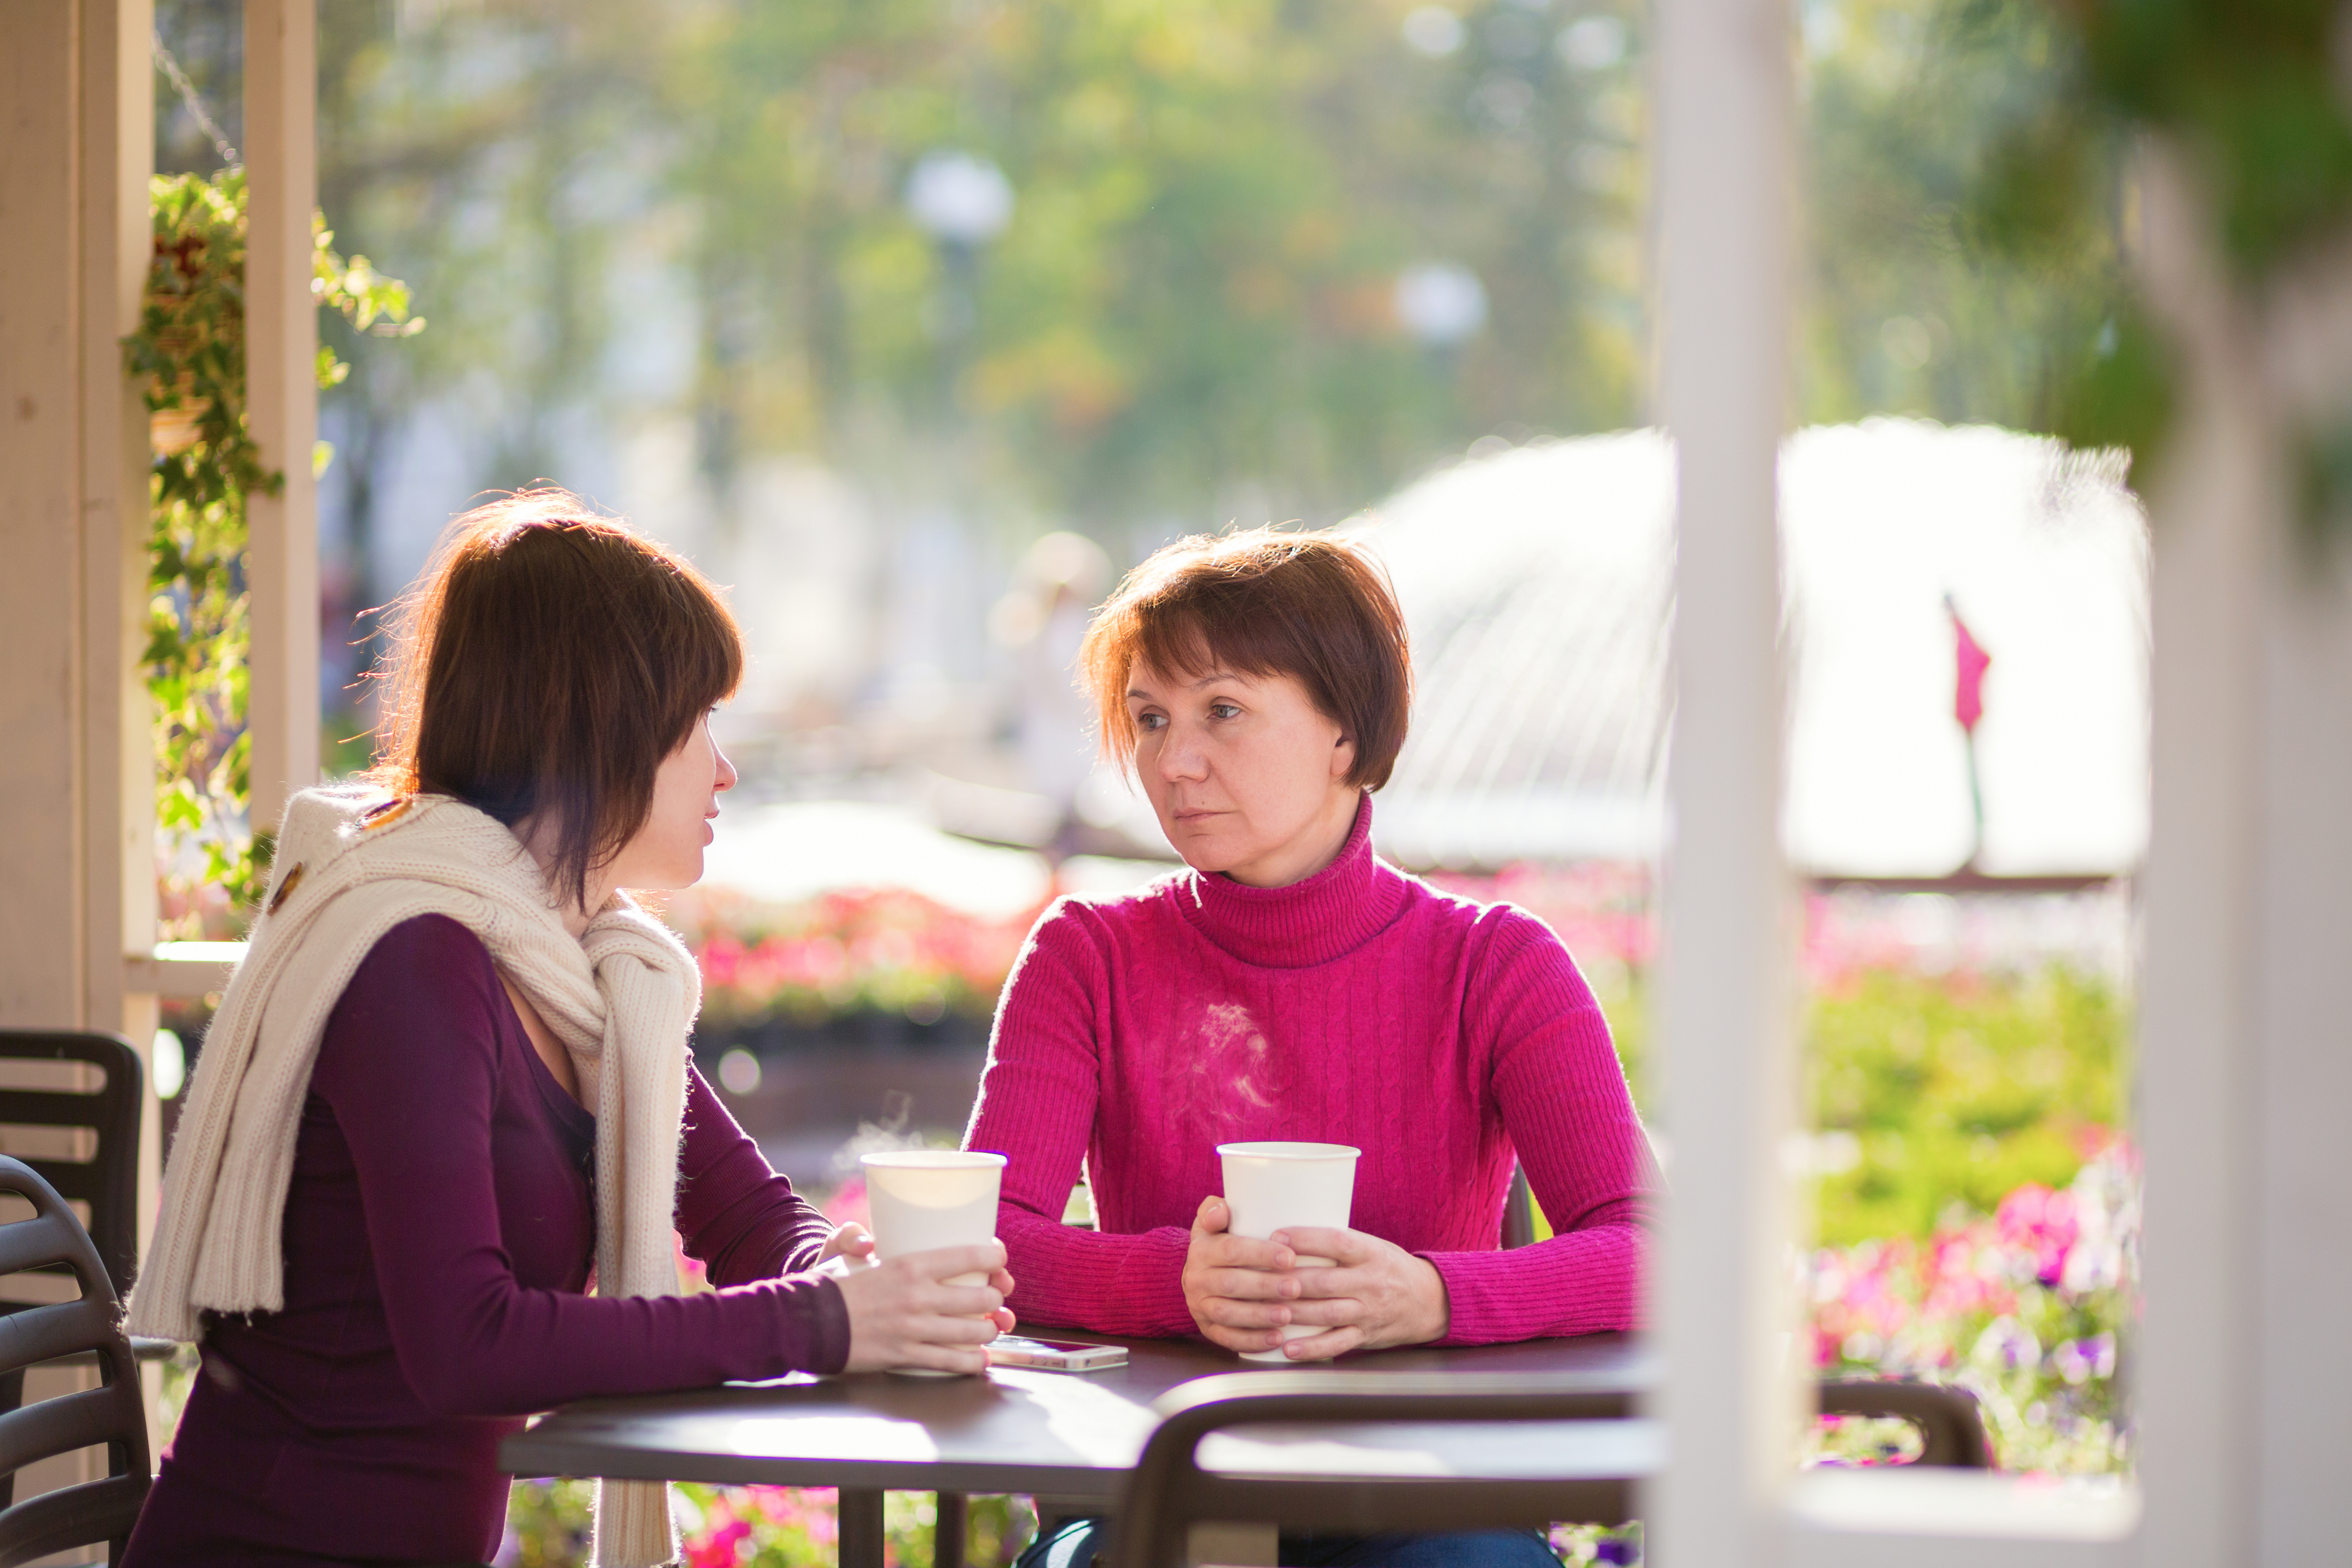 Una mujer joven y una mujer mayor están sentadas en una cafetería | Fuente: Shutterstock